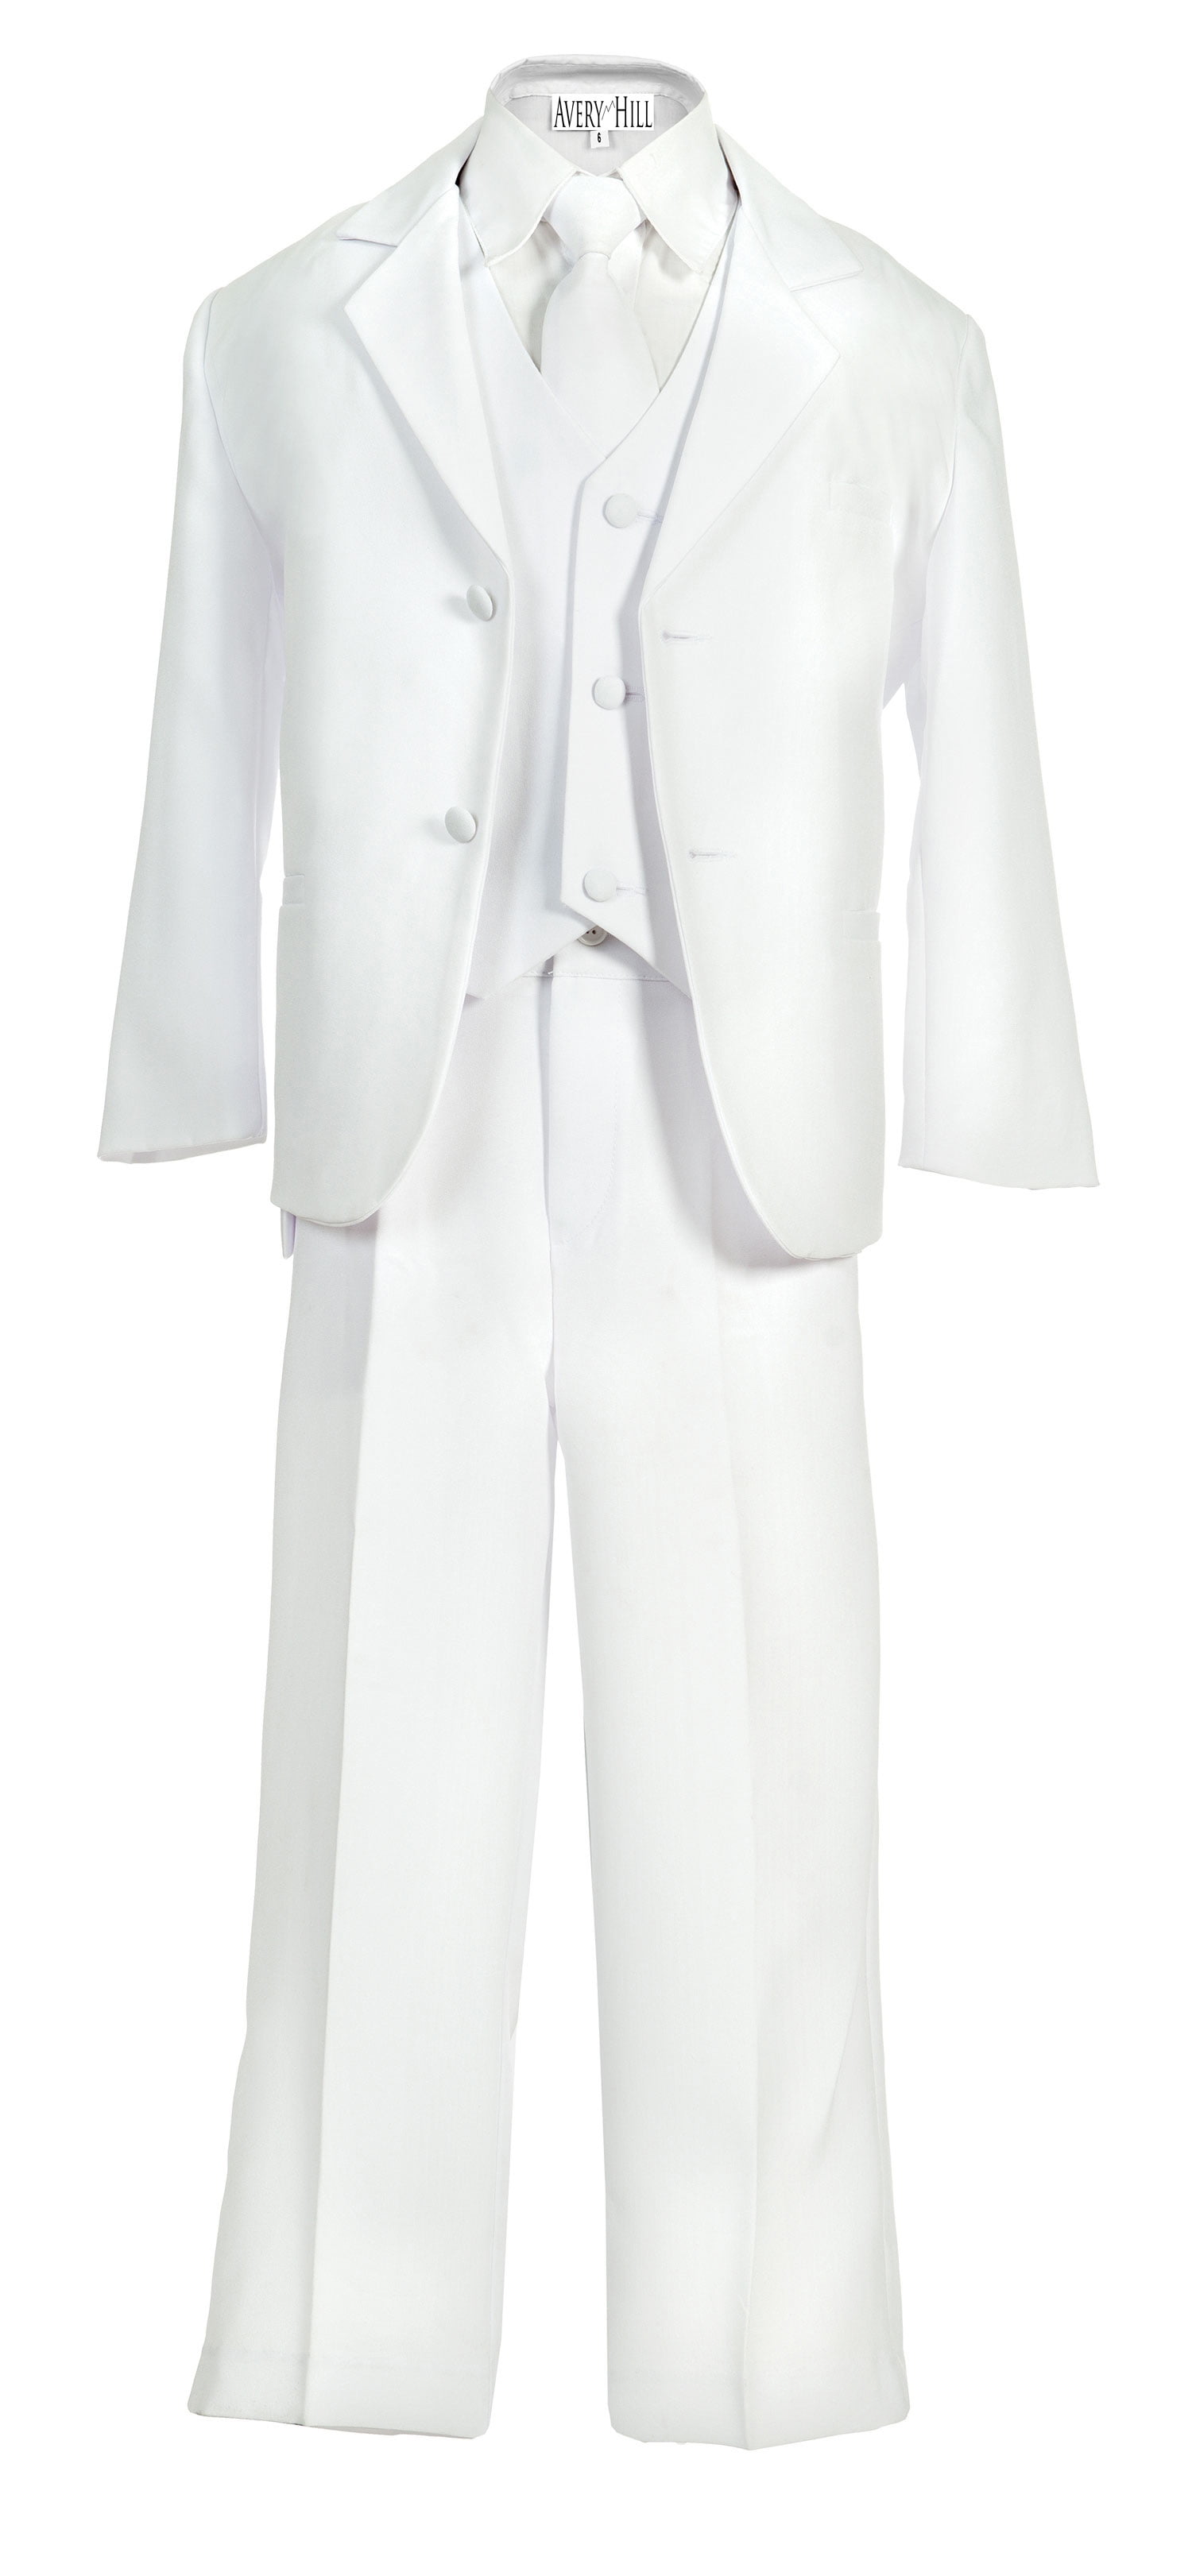 New Infant toddler boy white Formal Vest Set Brocade Suit size S M L XL 2T 3T 4T 